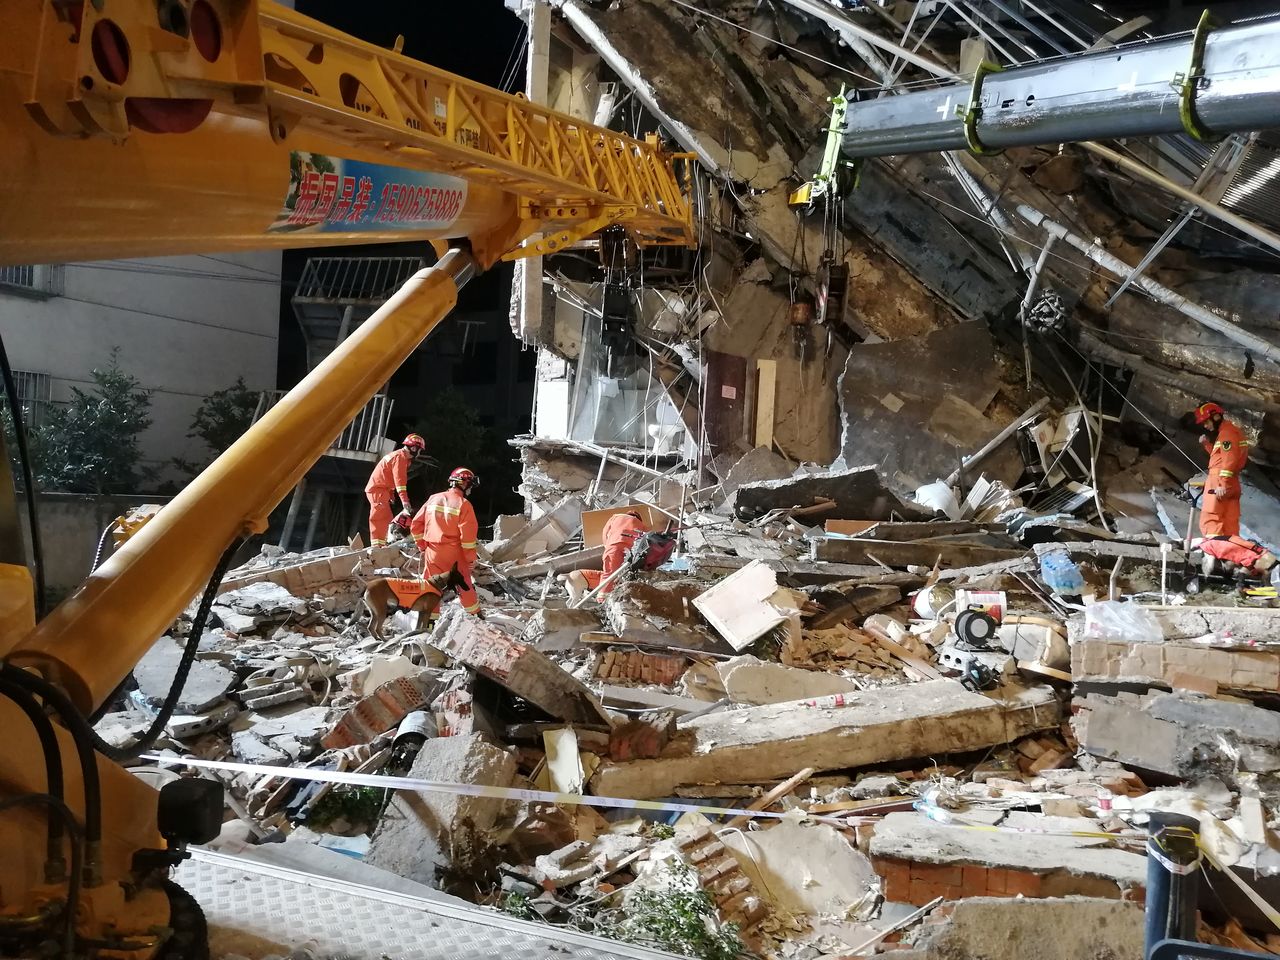 عمال انقاذ يعملون في موقع انهيار جزئي لفندق بمدينة سوتشو في شرق الصين يوم الثلاثاء. صورة لرويترز من تشاينا ديلي.يحظر استخدامها داخل الصين.